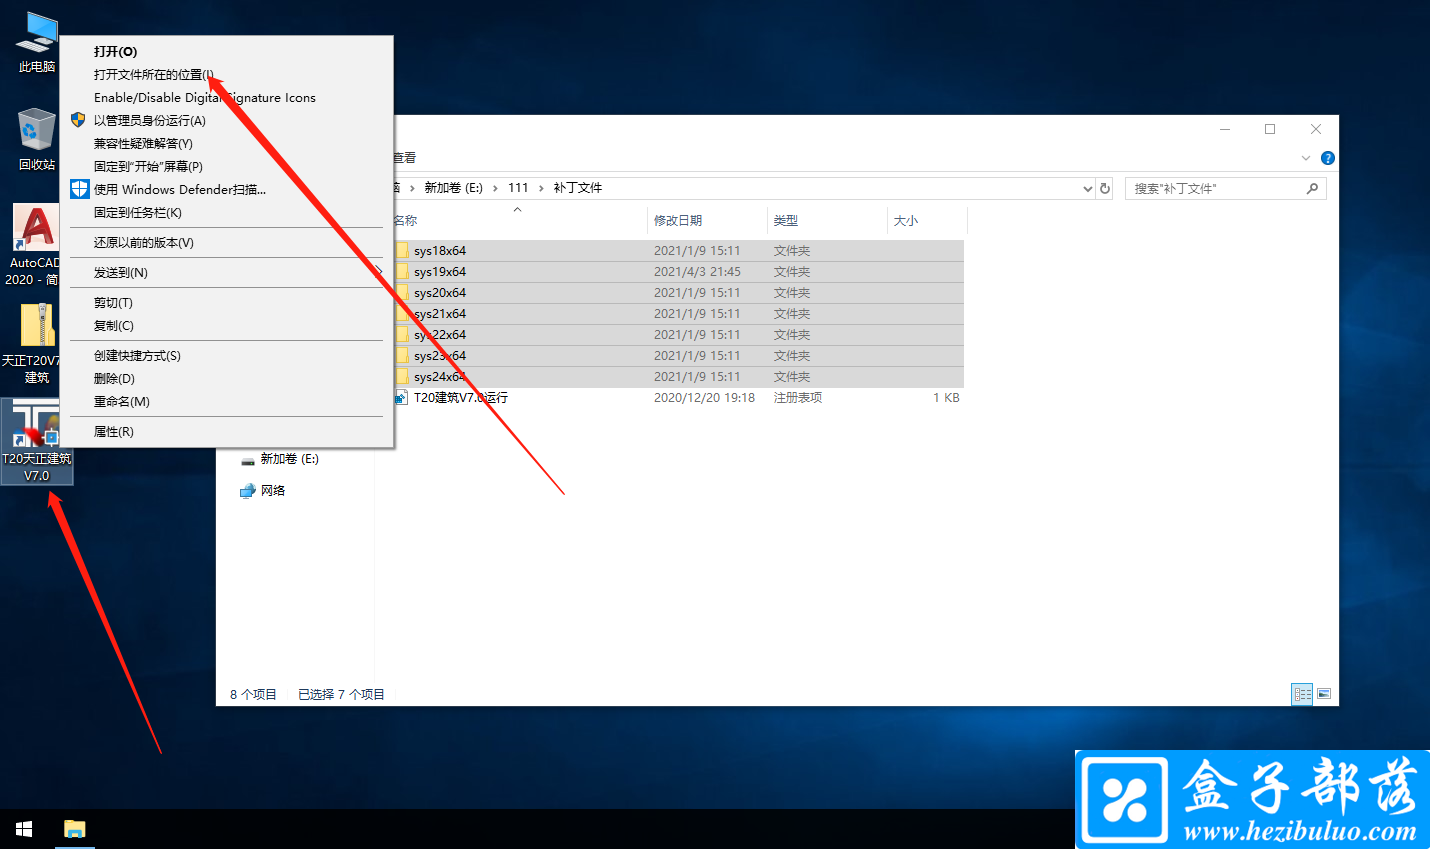 天正软件 T20 V7.0 天正设计软件中文免费版